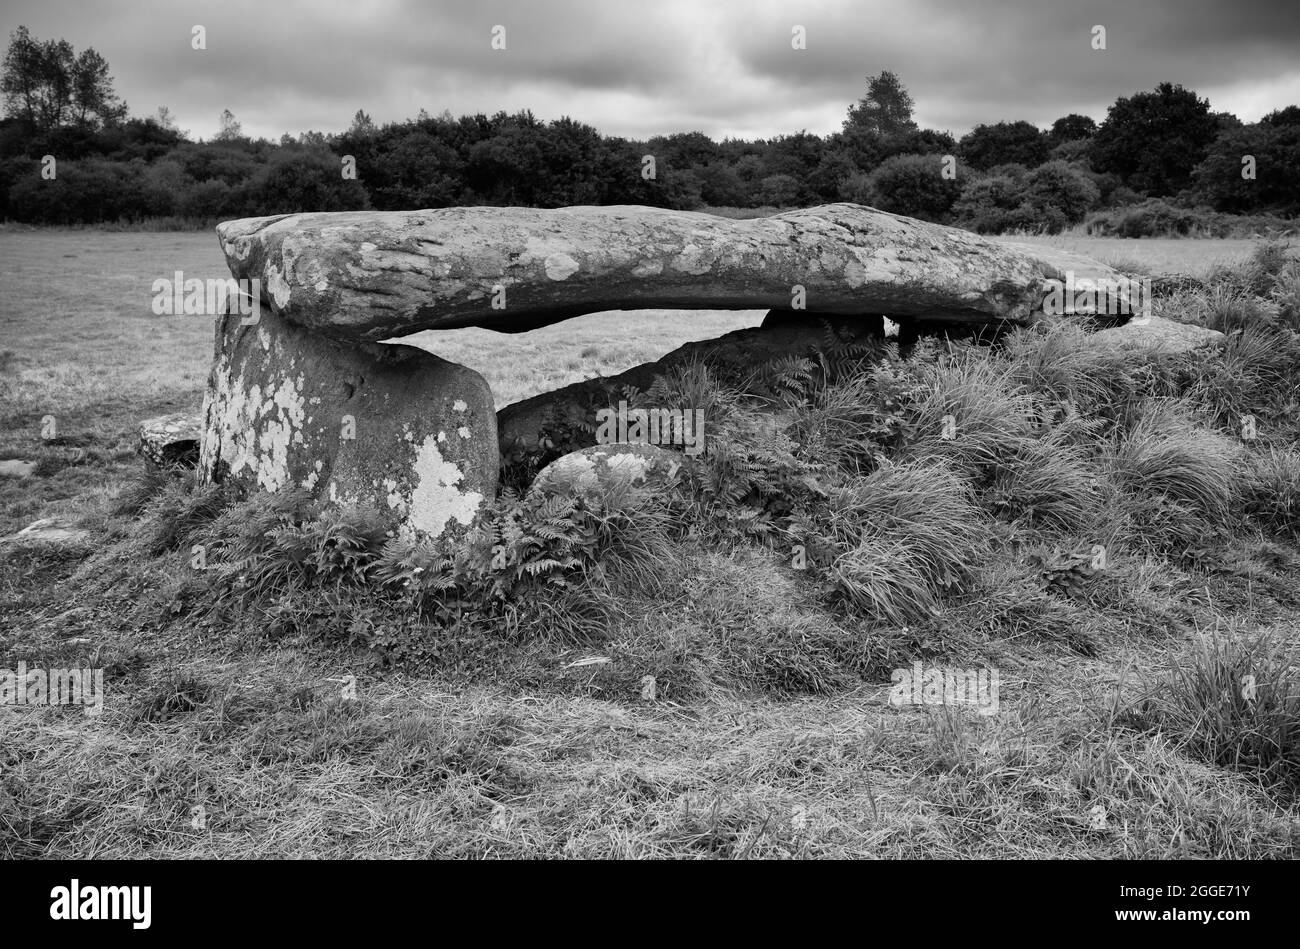 Allee couverte des dolmens de Kerguntuil (également Kerguntuilh), Tregastel, Côtes-d'Armor, Bretagne, France Banque D'Images